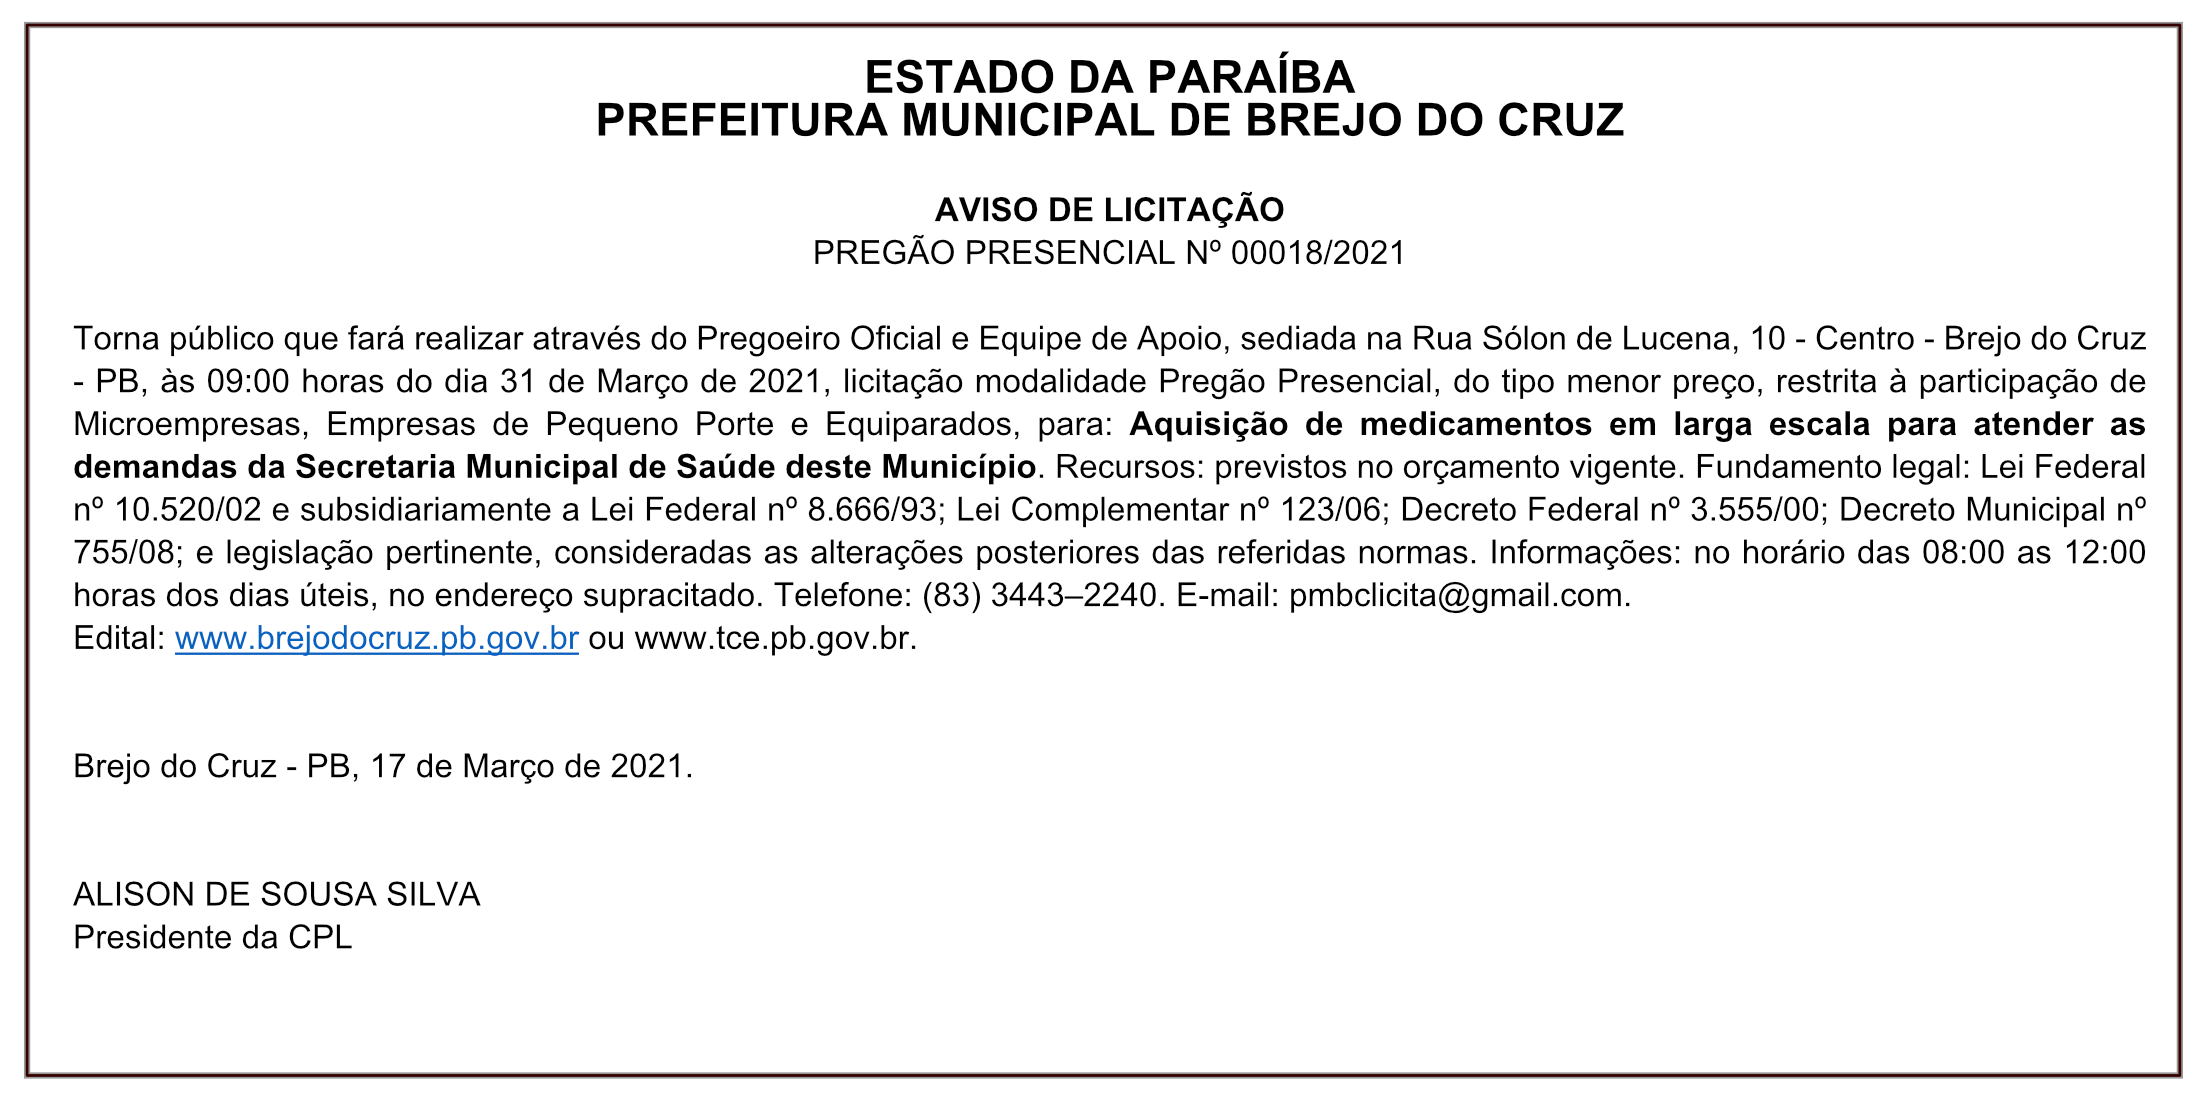 PREFEITURA MUNICIPAL DE BREJO DO CRUZ – AVISO DE LICITAÇÃO – PREGÃO PRESENCIAL Nº 00018/2021